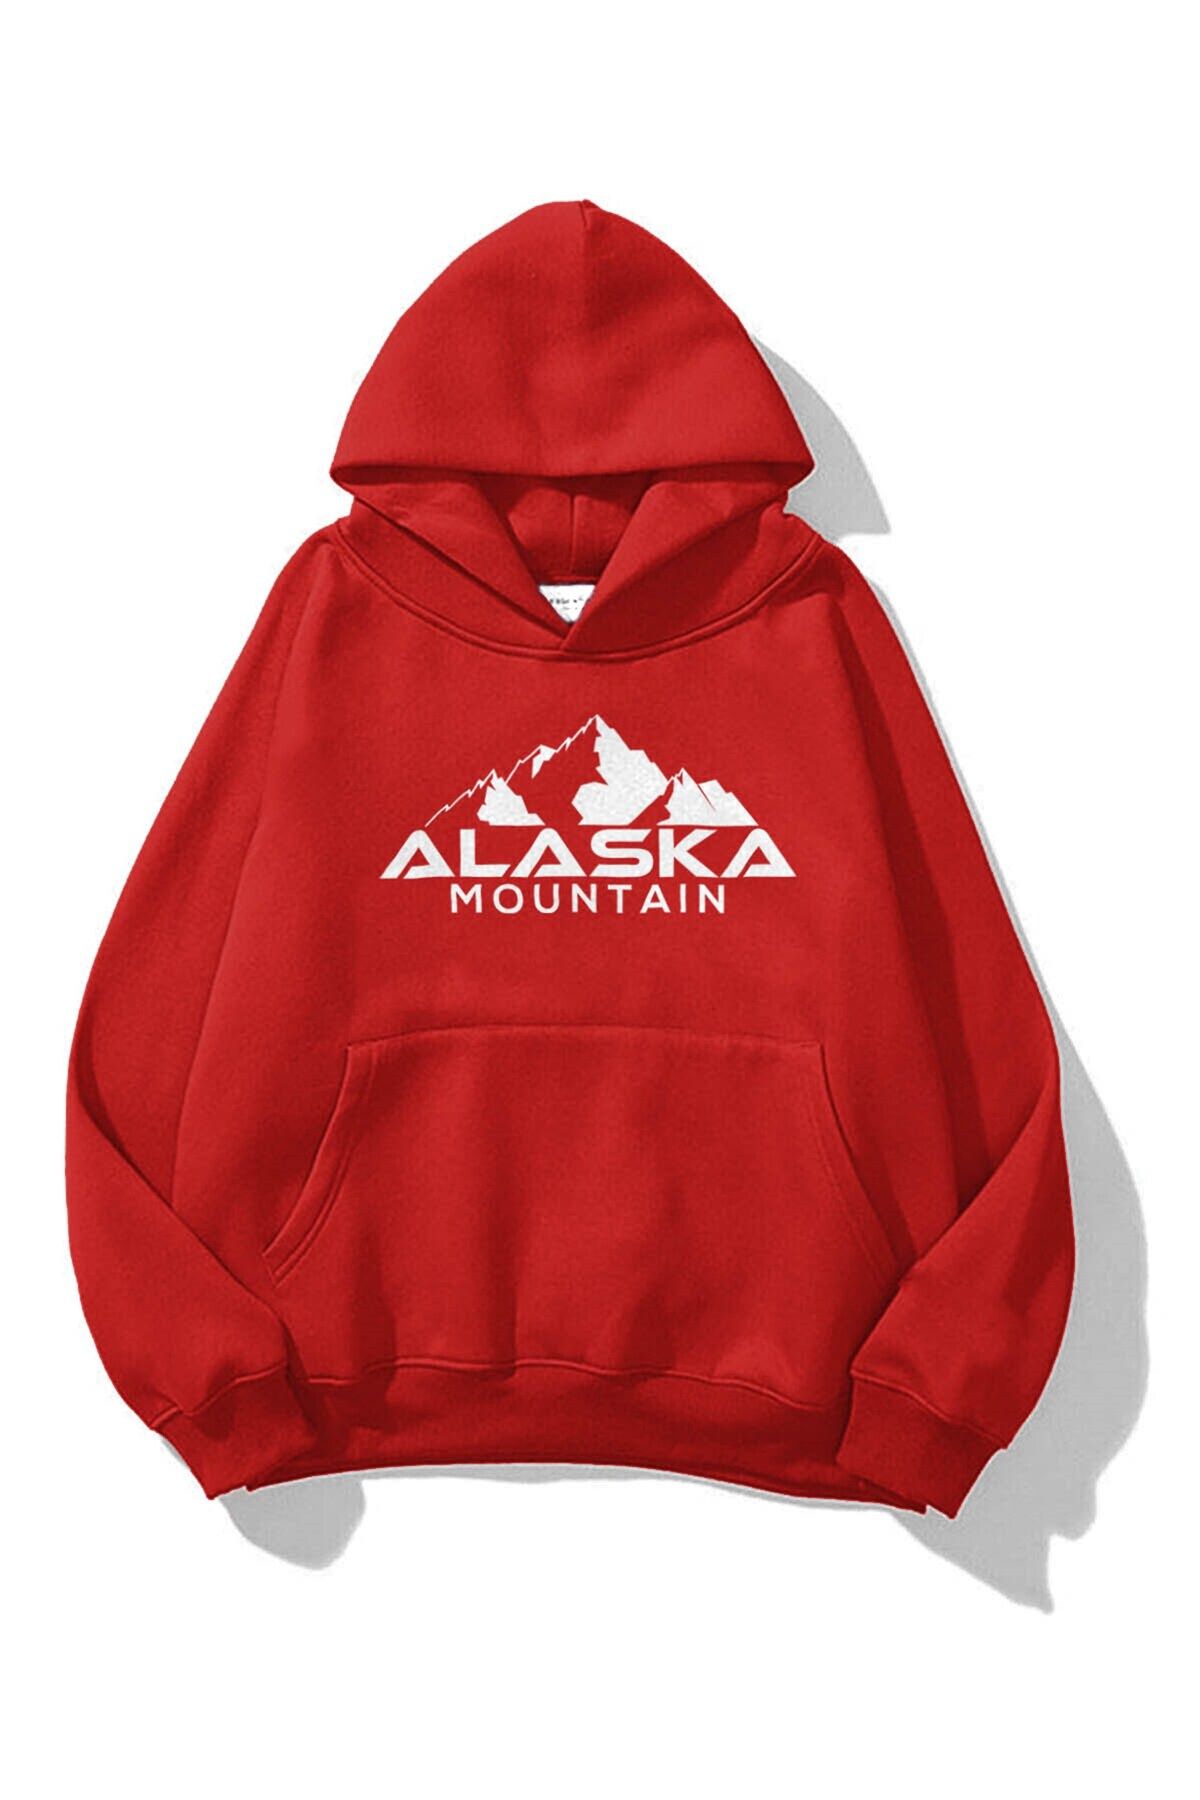 Trendiz Unisex Alaska Sweatshirt Hoodie Red - Trendyol